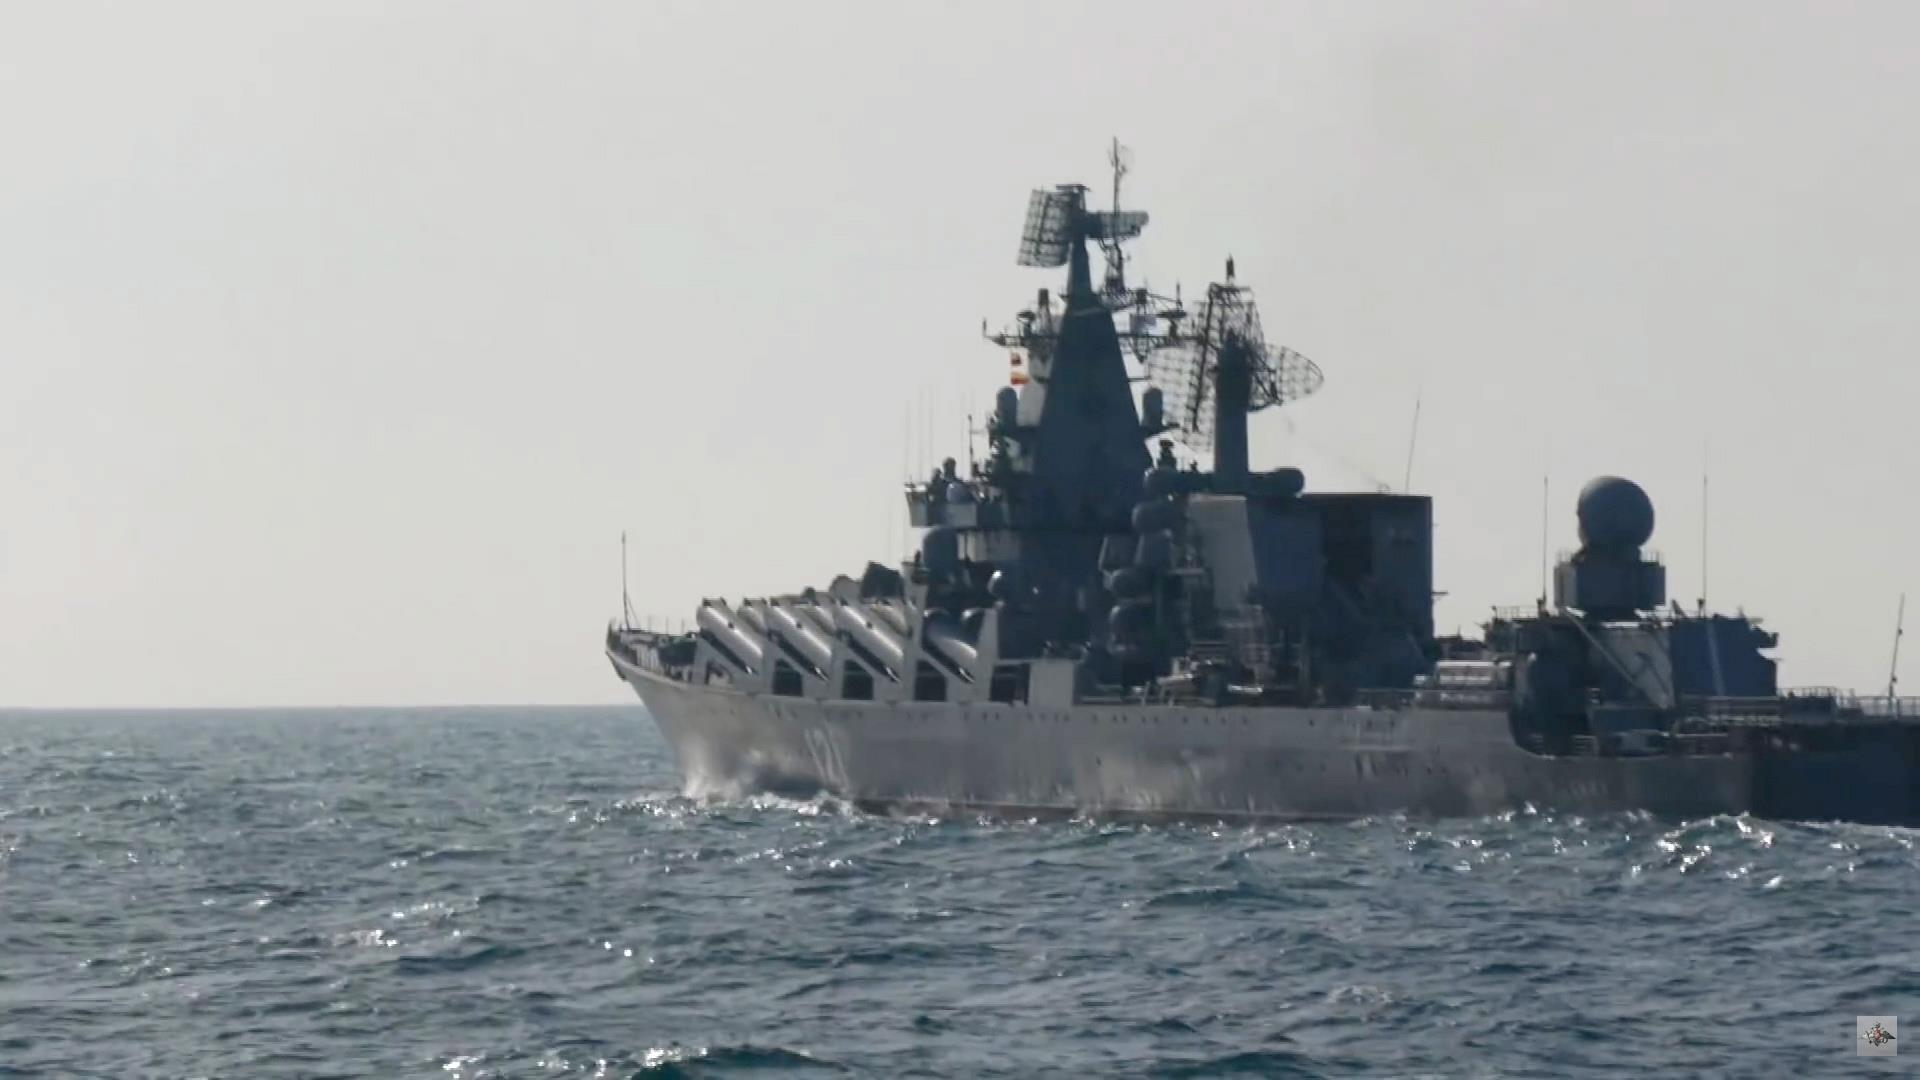 Moskva, navio-símbolo da Rússia, sofreu com explosões